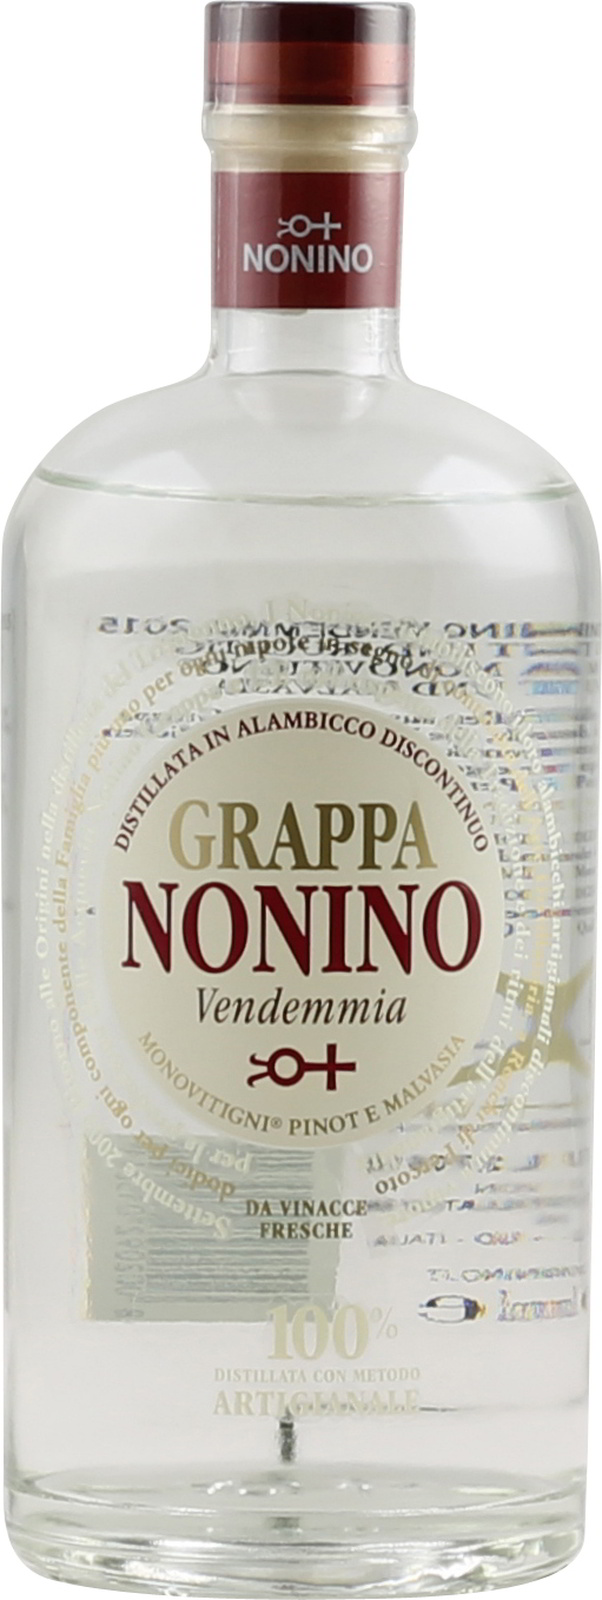 700 Grappa Nonino 40% ml Vendemmia